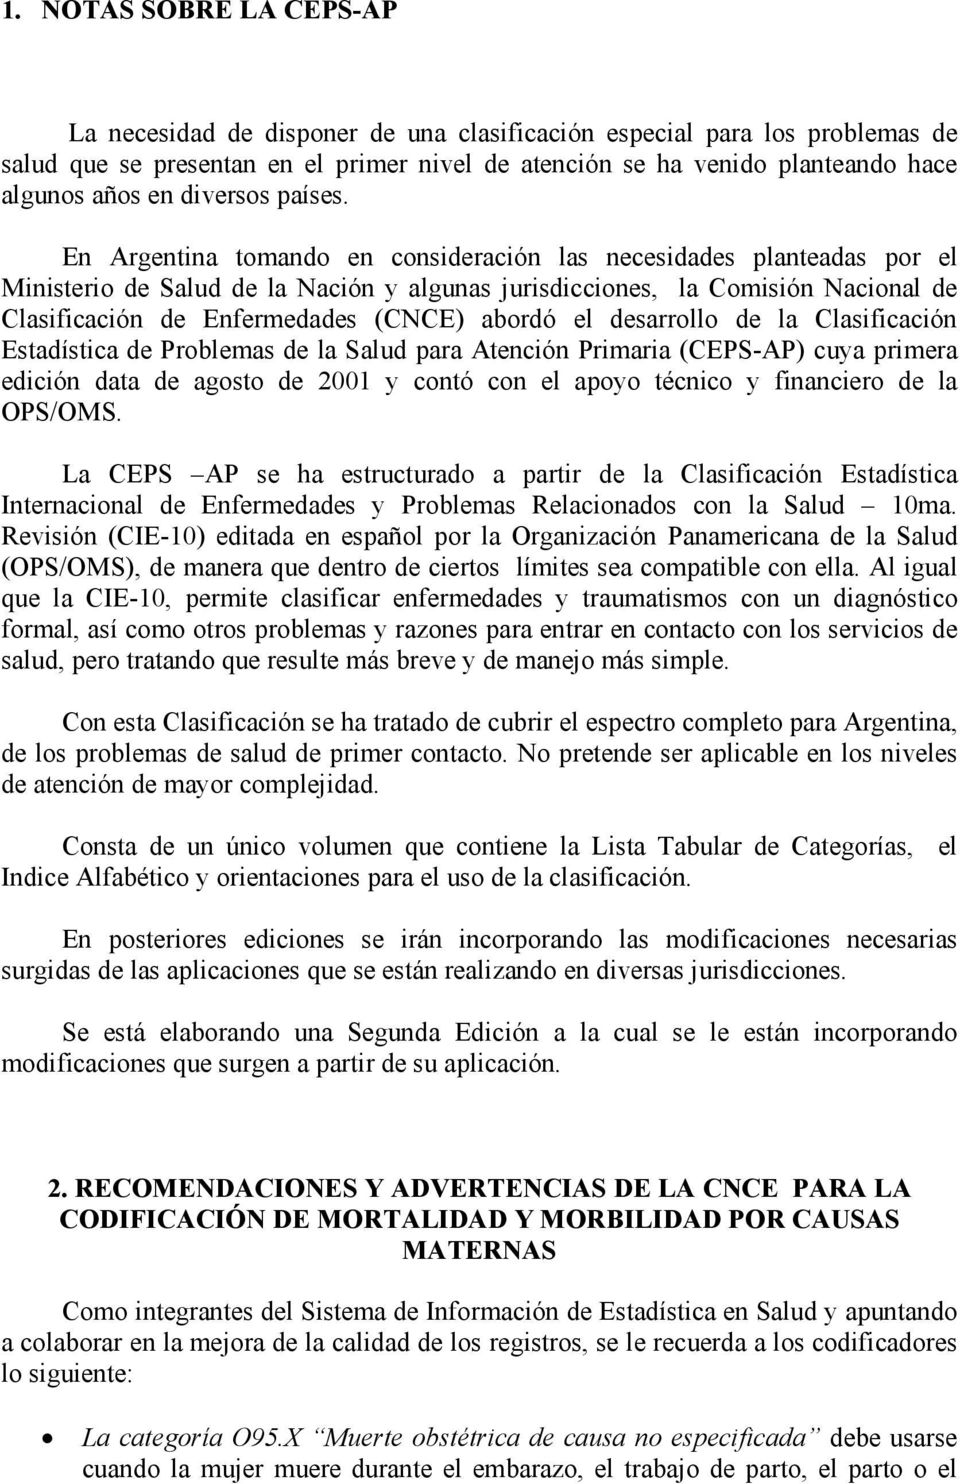 En Argentina tomando en consideración las necesidades planteadas por el Ministerio de Salud de la Nación y algunas jurisdicciones, la Comisión Nacional de Clasificación de Enfermedades (CNCE) abordó